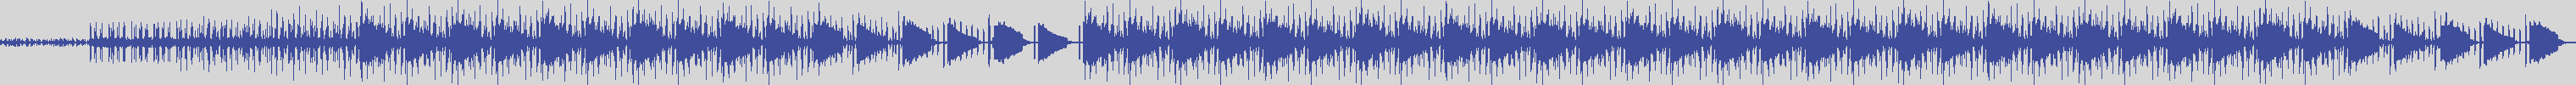 noclouds_chillout [NOC120] Santorini Sunset - Documento [Original Mix] audio wave form